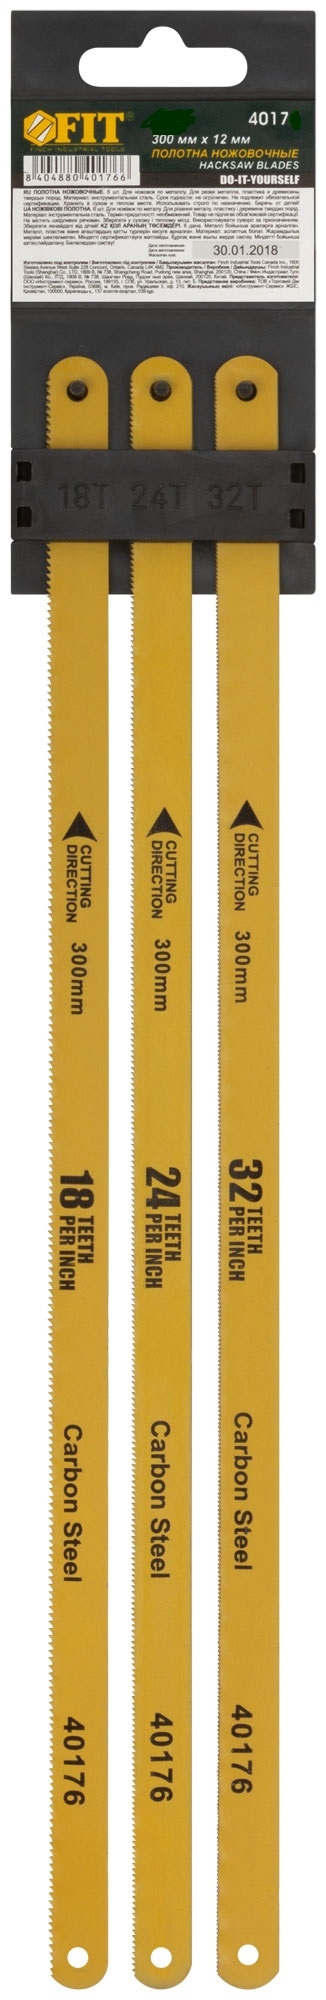 Полотна ножовочные по металлу, 300 мм, (18ТPI+24ТPI+32ТPI/20Cr ), 3 шт. FIT 40175 полотна зубр эксперт 15580 h5 для эл лобзика по дереву и металлу t хвостовик пластик бокс 5шт